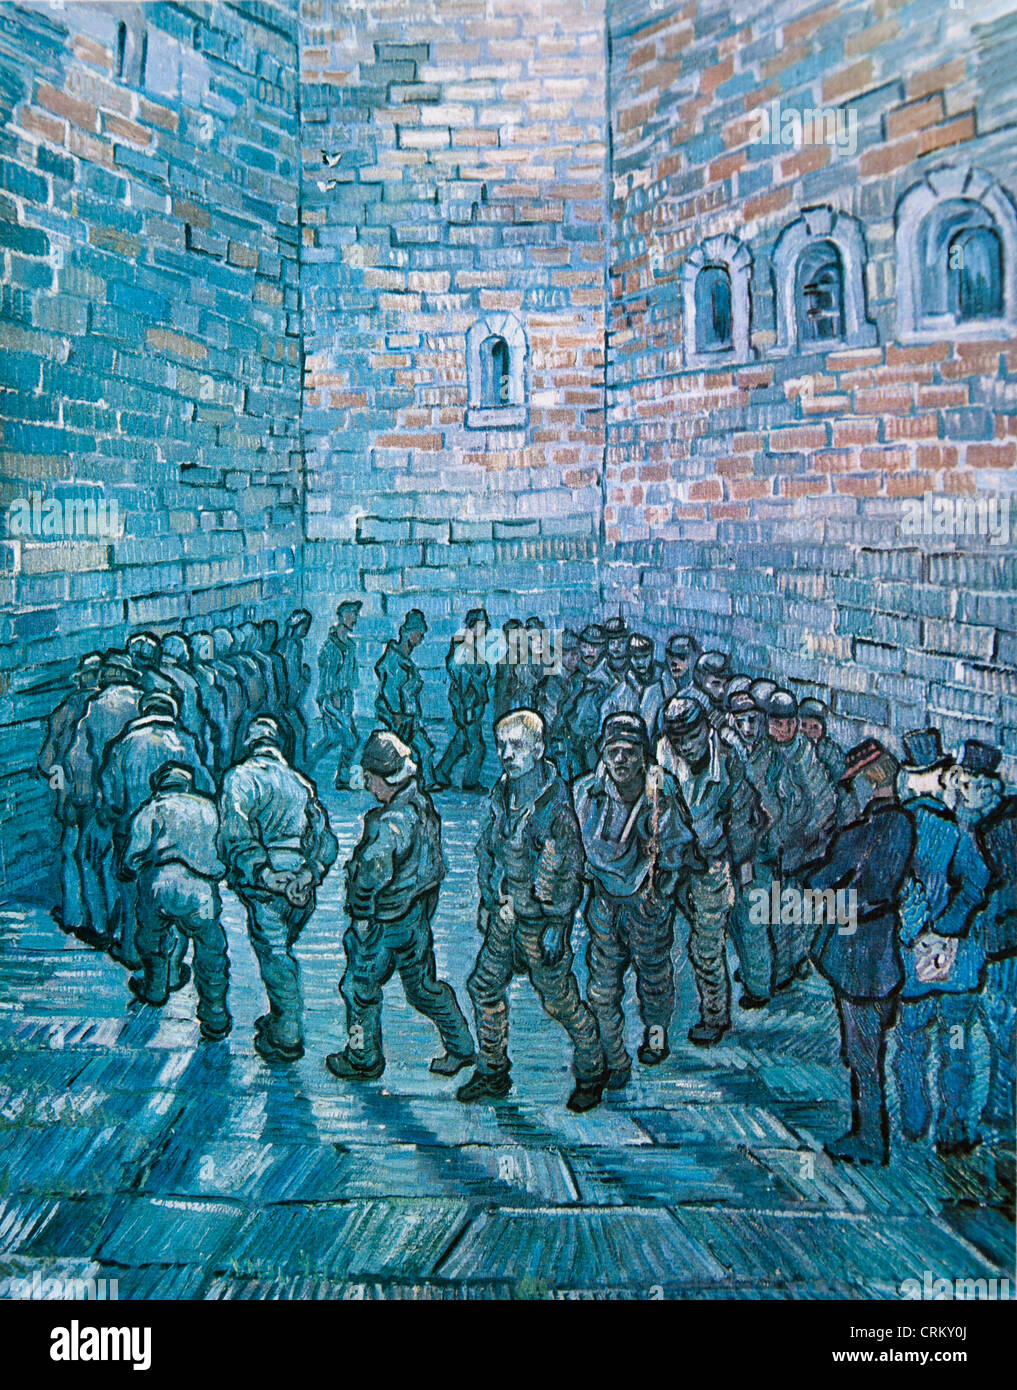 La Ronde Des Prisonniers Van Gogh Banque De Photographies Et Dimages